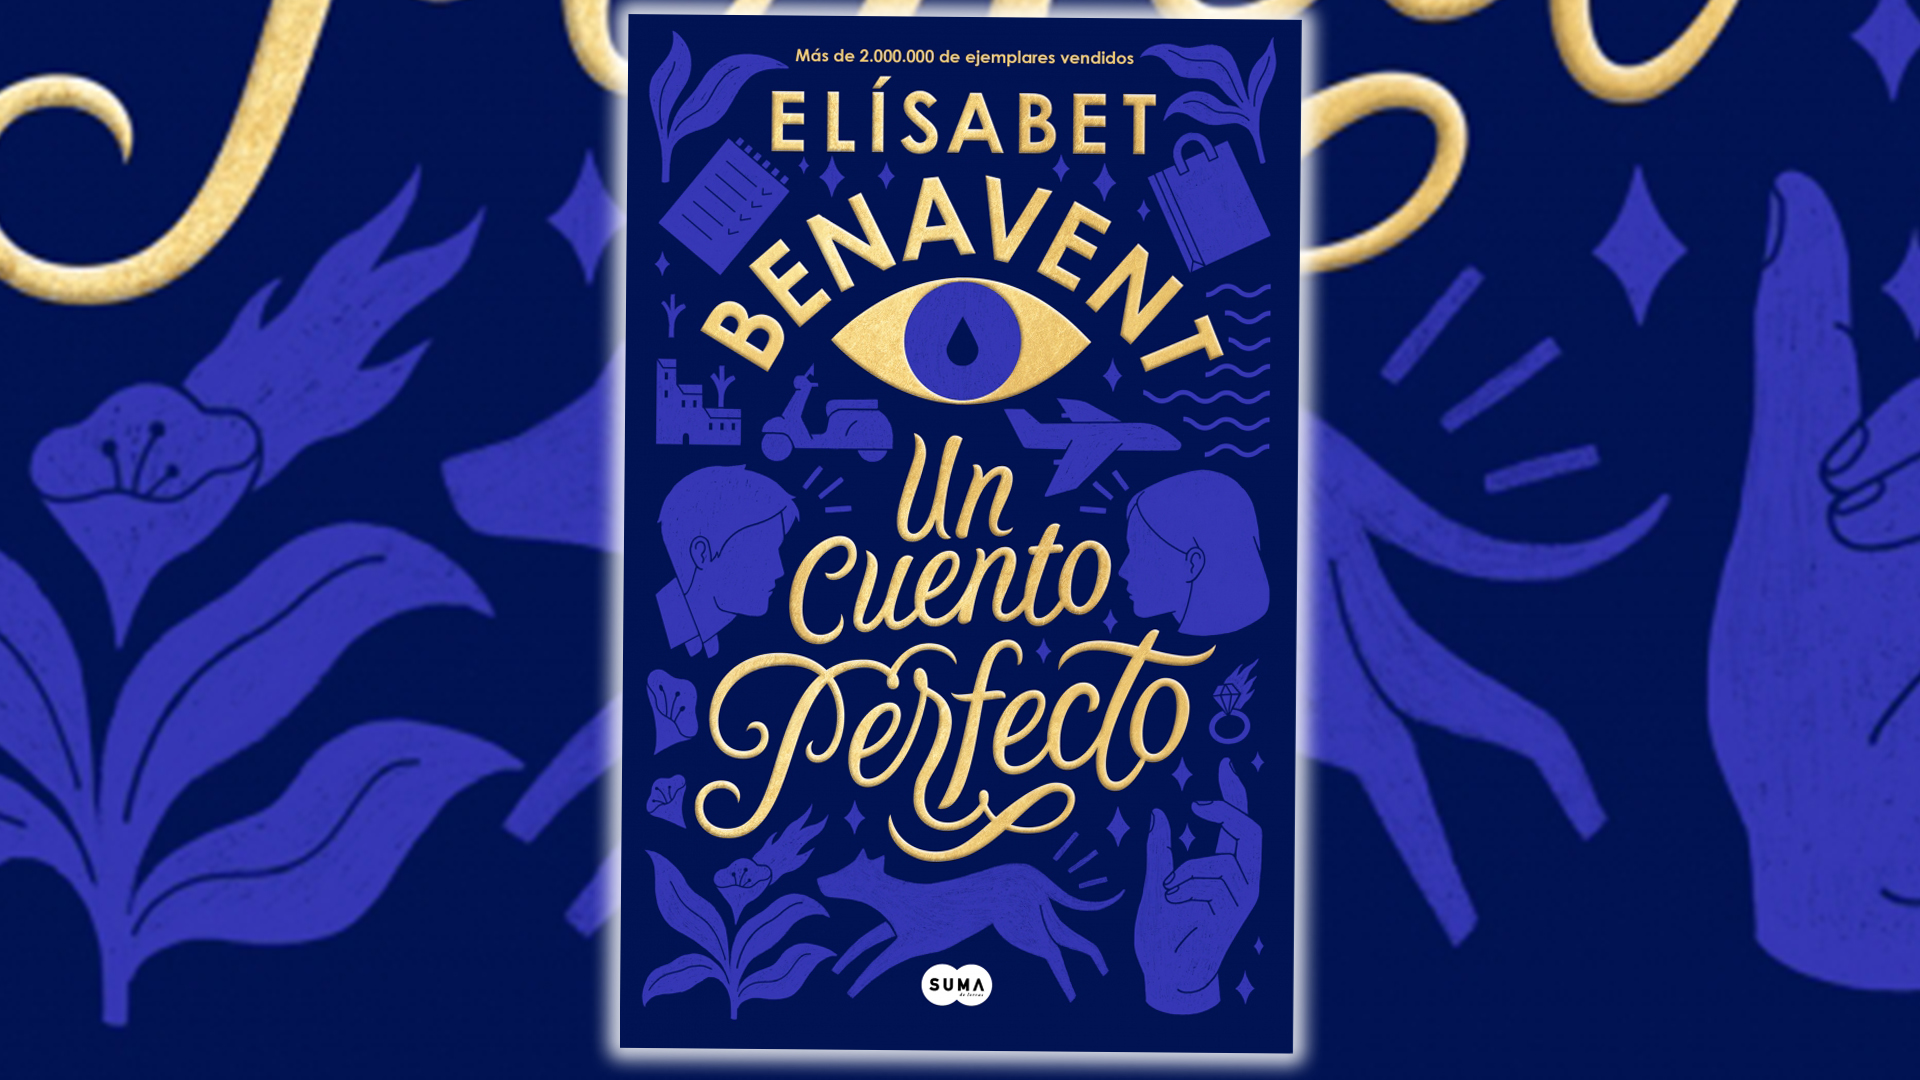 UN CUENTO PERFECTO (EDICION LIMITADA) - ELISABET BENAVENT